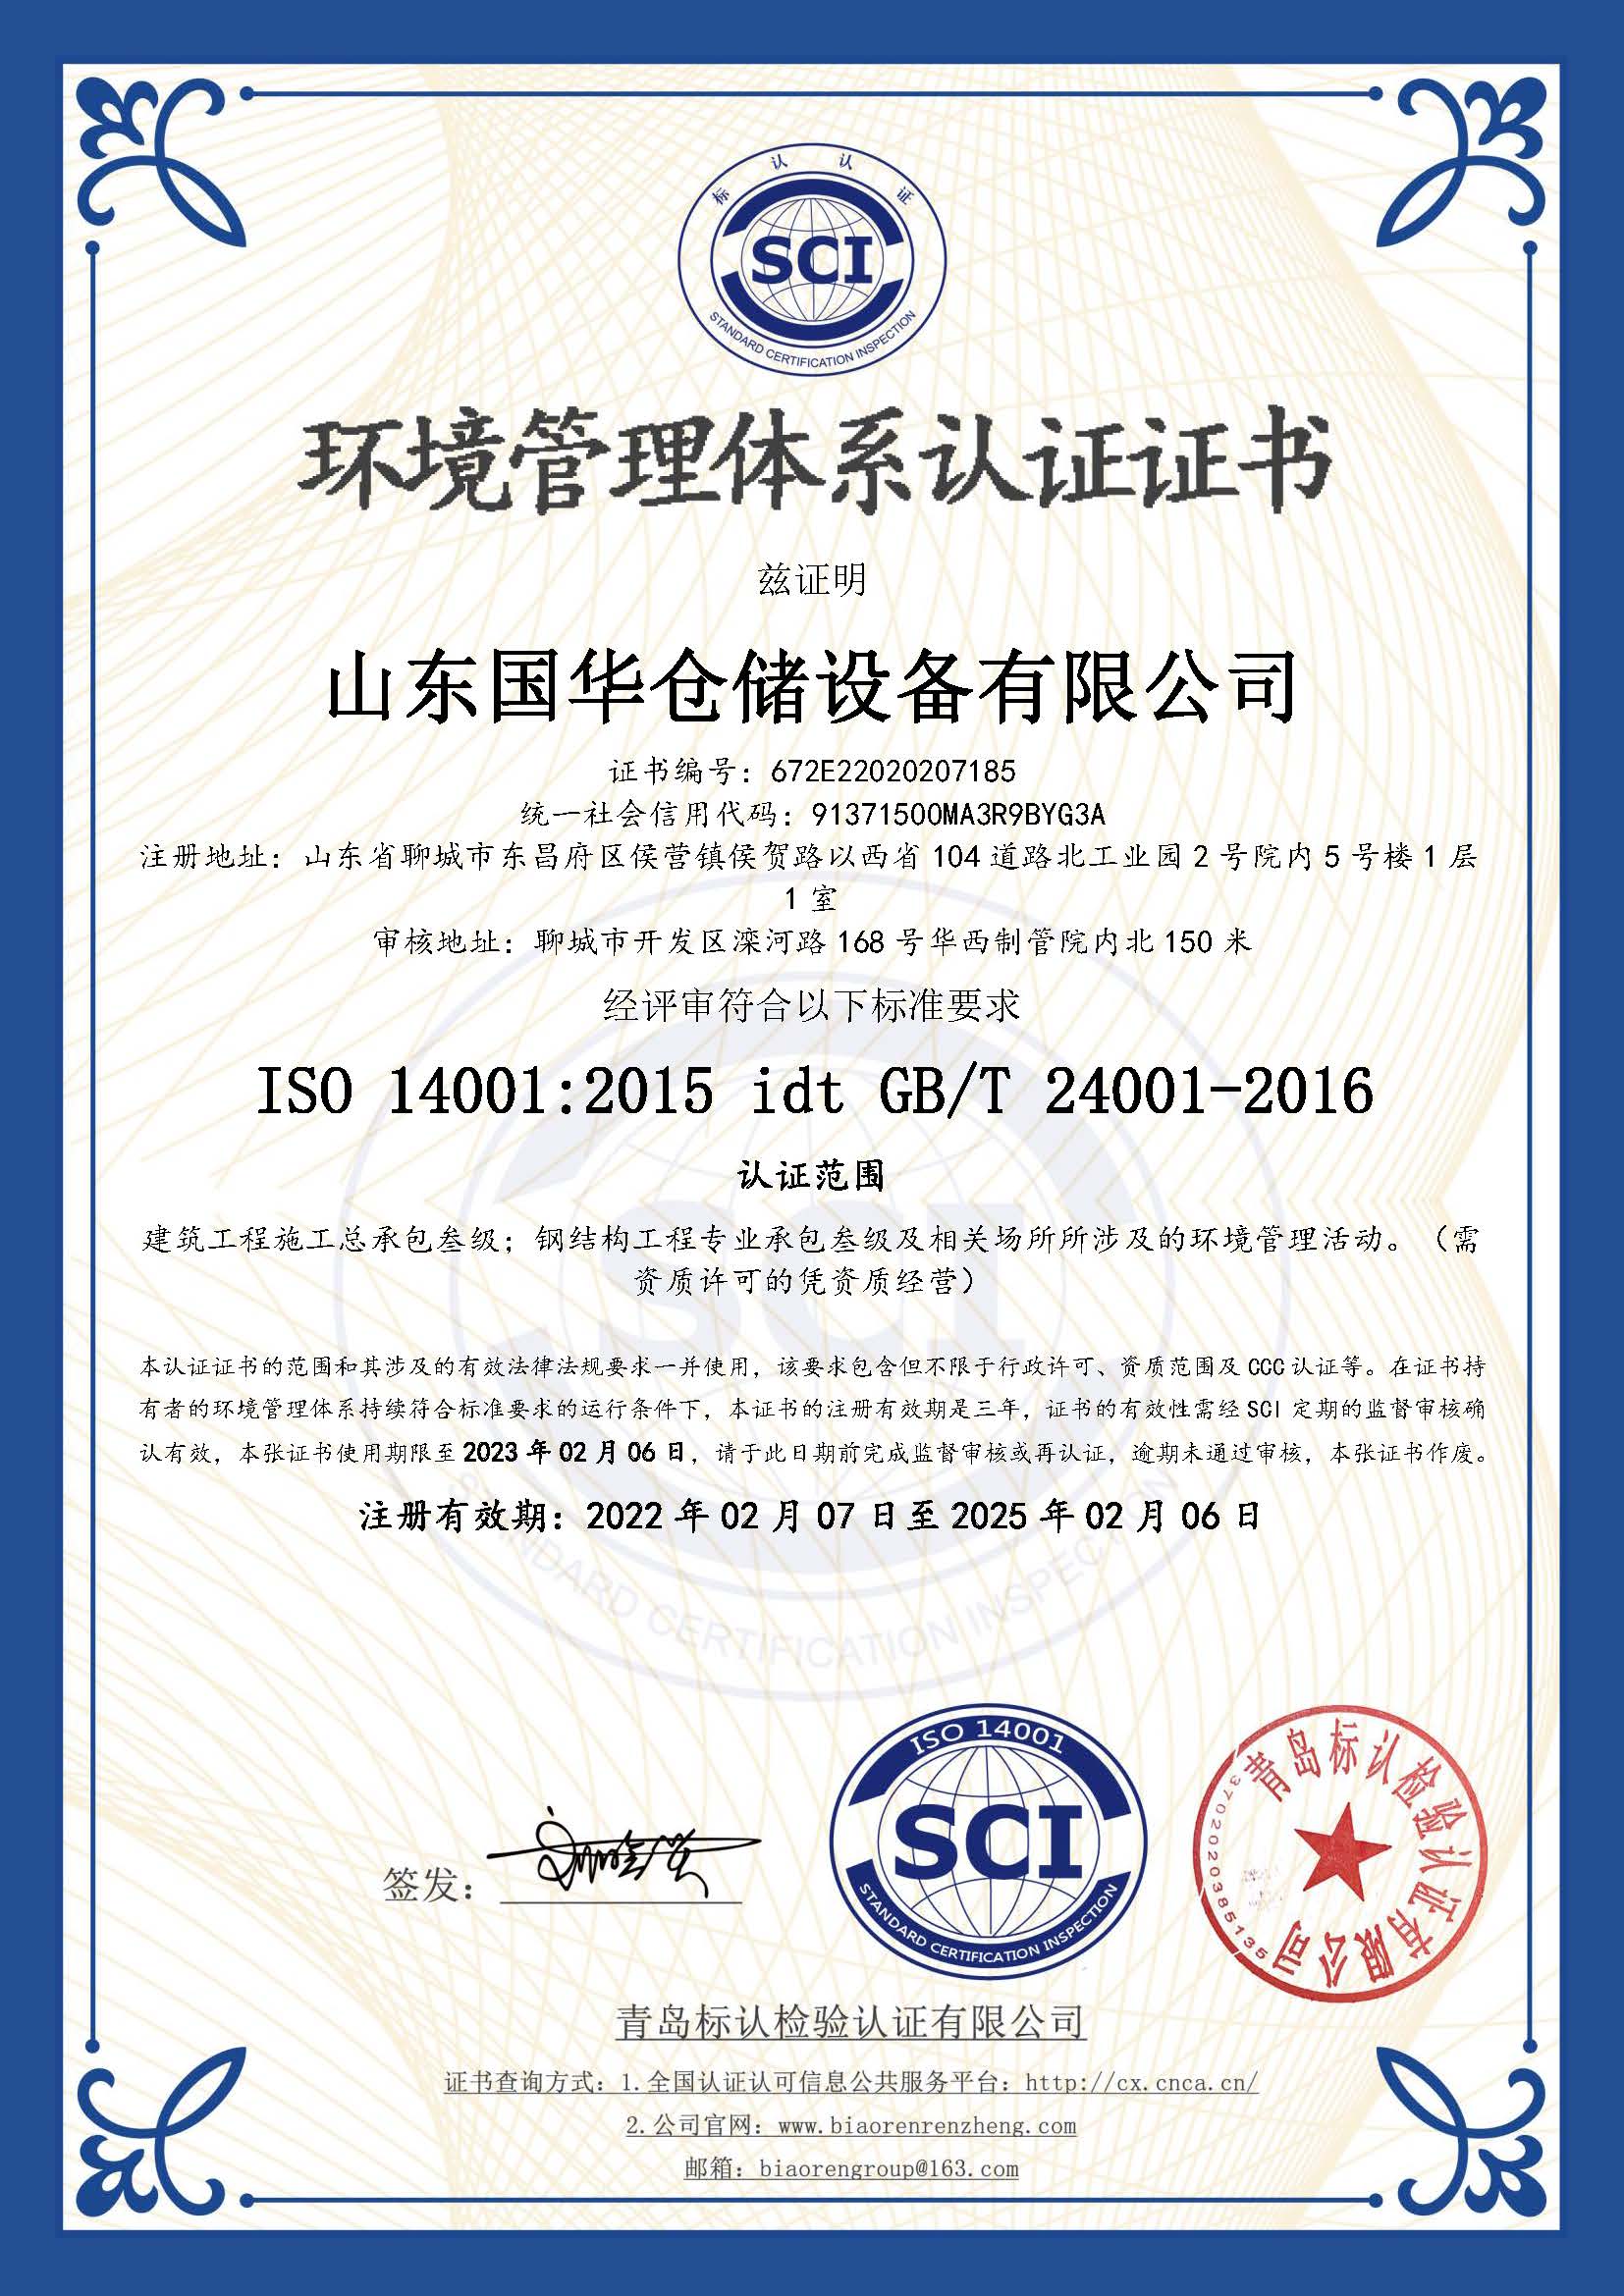 佳木斯钢板仓环境管理体系认证证书